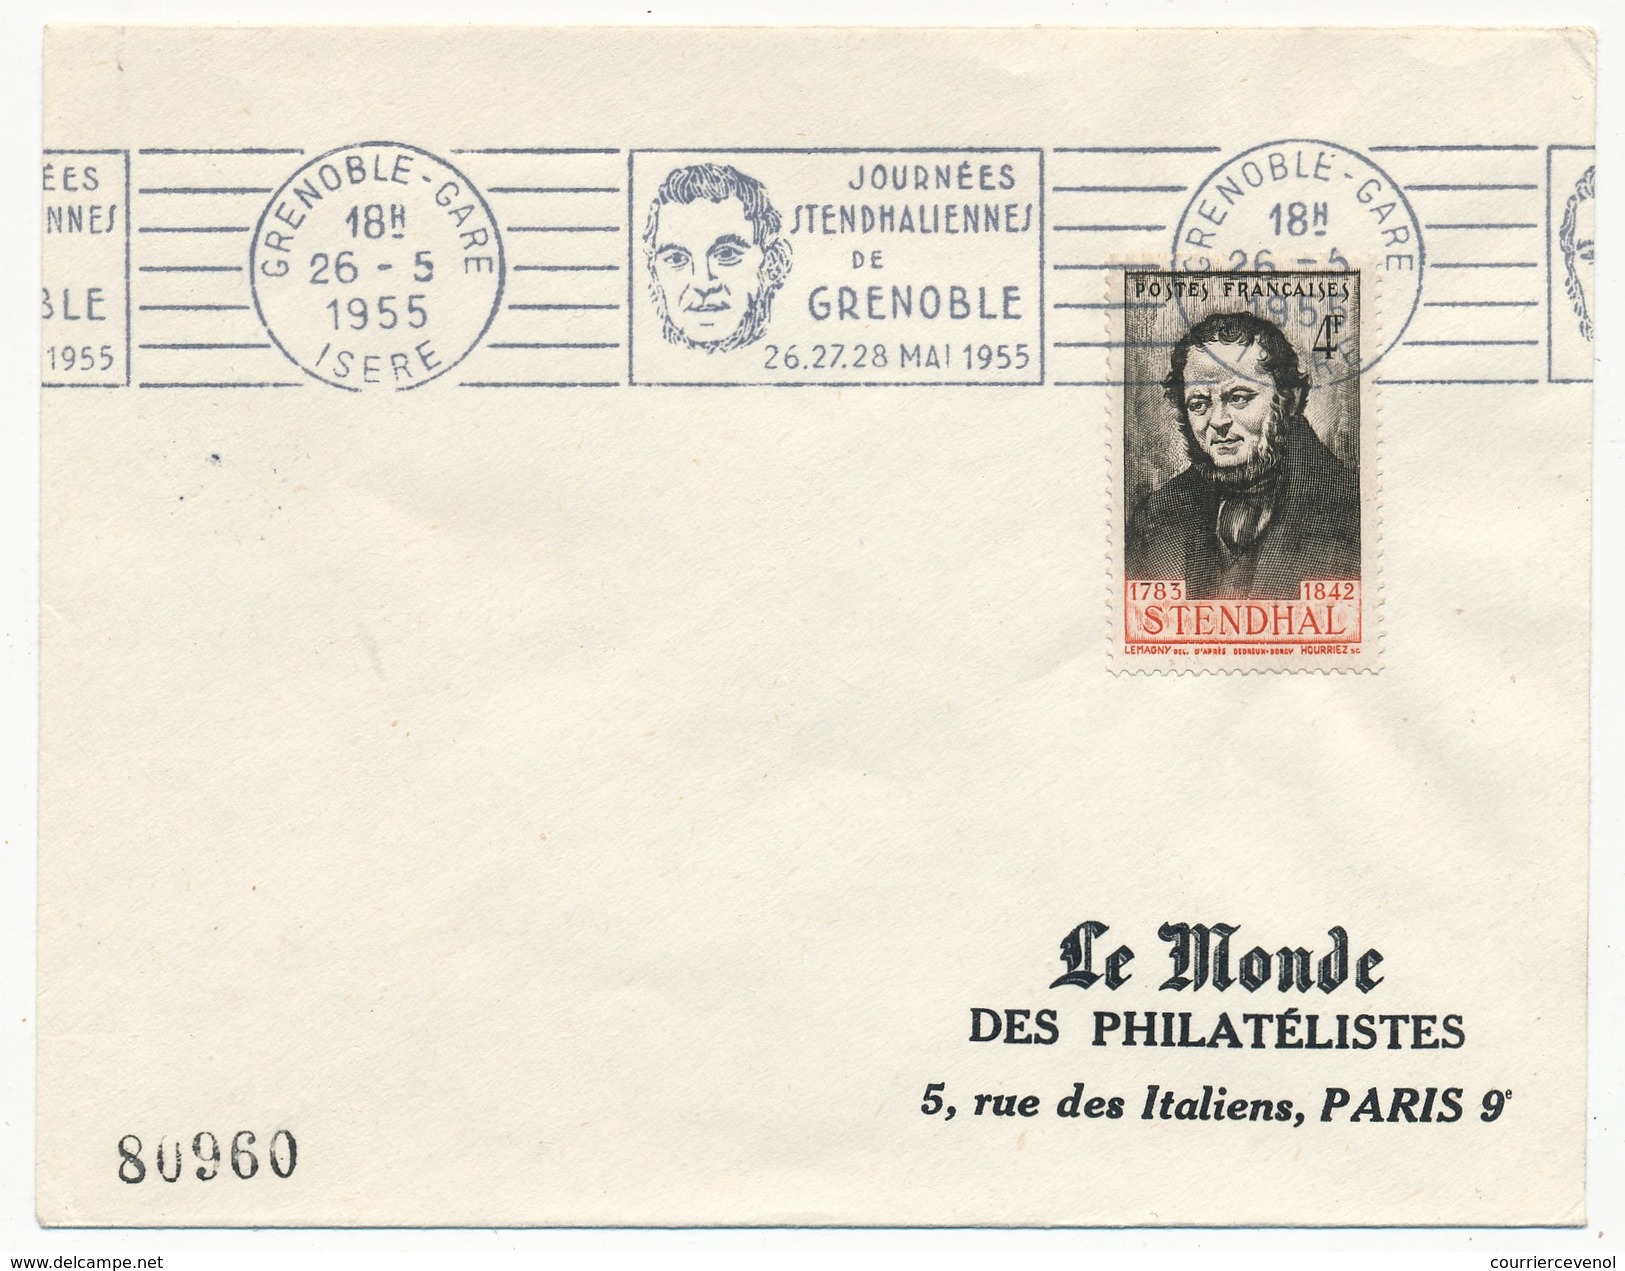 FRANCE - Enveloppe - OMEC "Journées Stendhaliennes" GRENOBLE 26 Mai 1955 - Schriftsteller